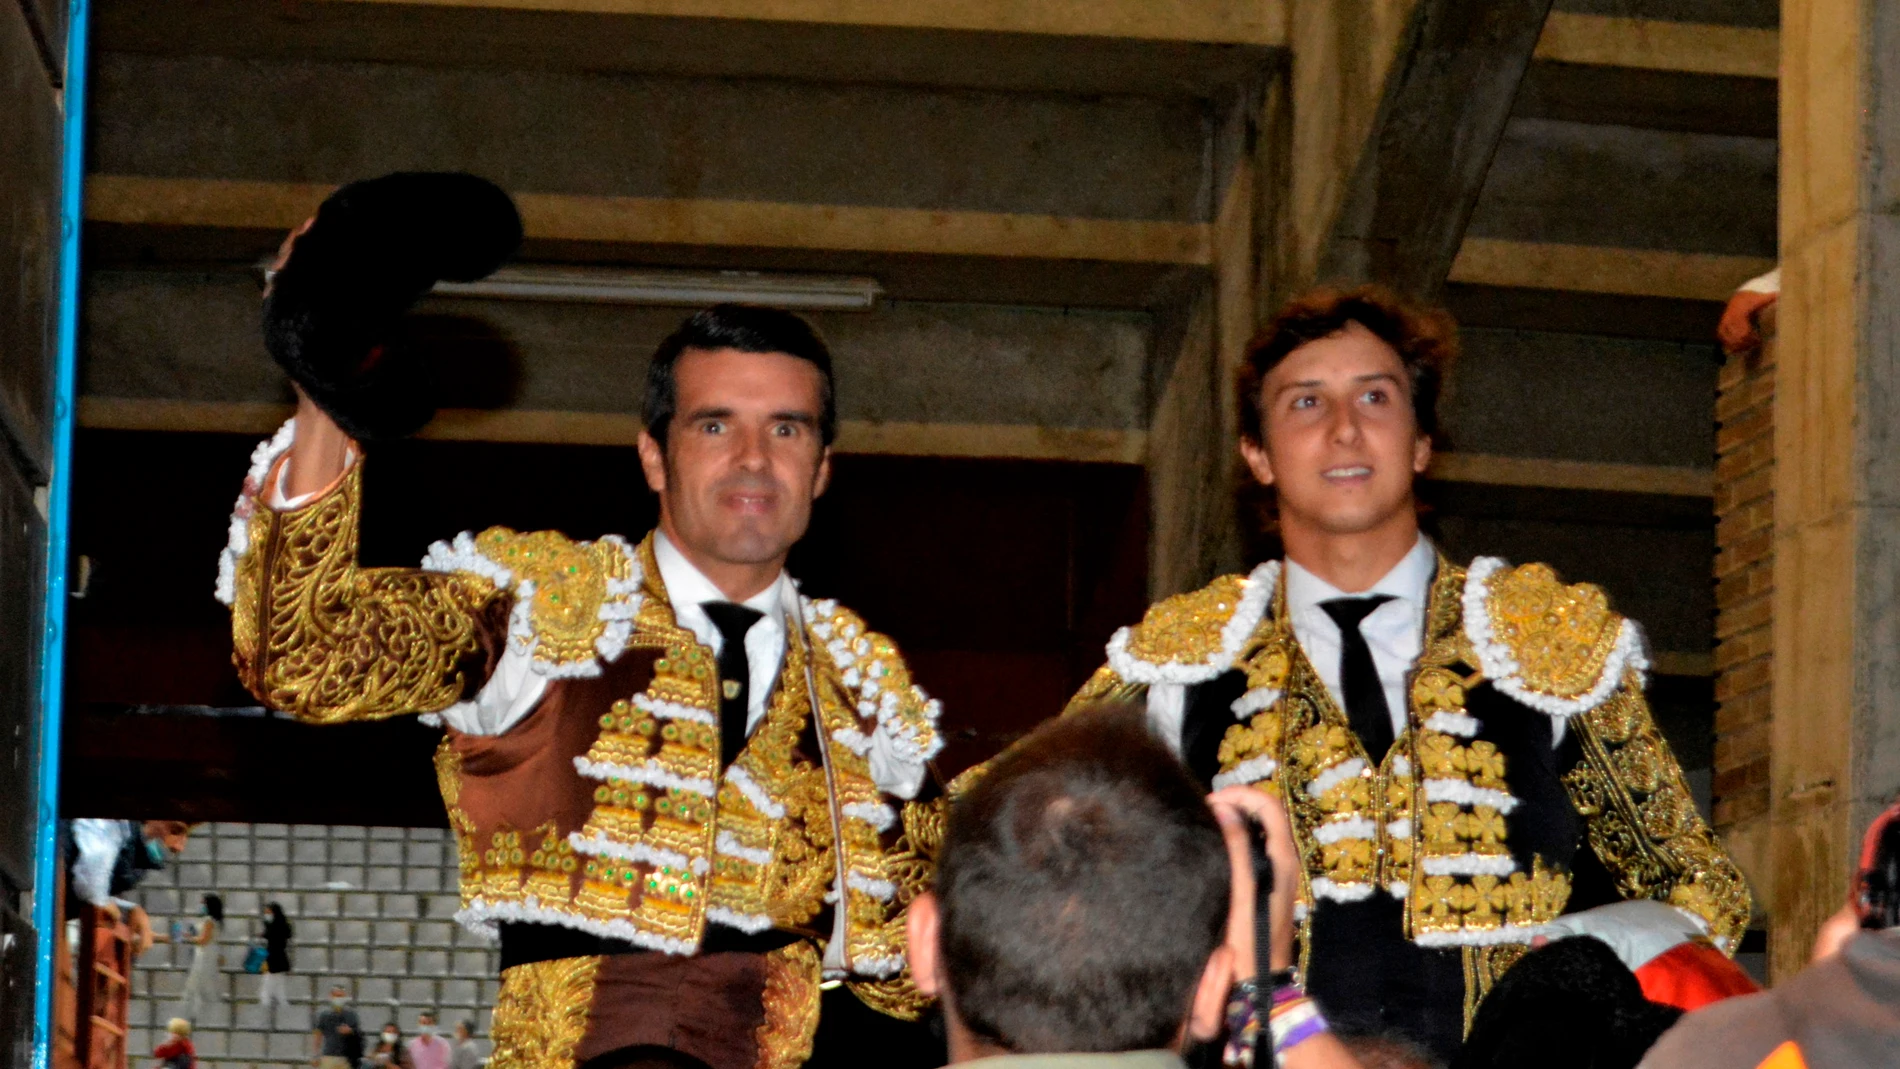 El peruano Roca Rey (d) y Emilio de Justo, triunfadores de la tarde, salen a hombros tras el festejo taurino celebrado hoy jueves en el retorno de la Feria de Palencia. EFE/ Almudena Álvarez